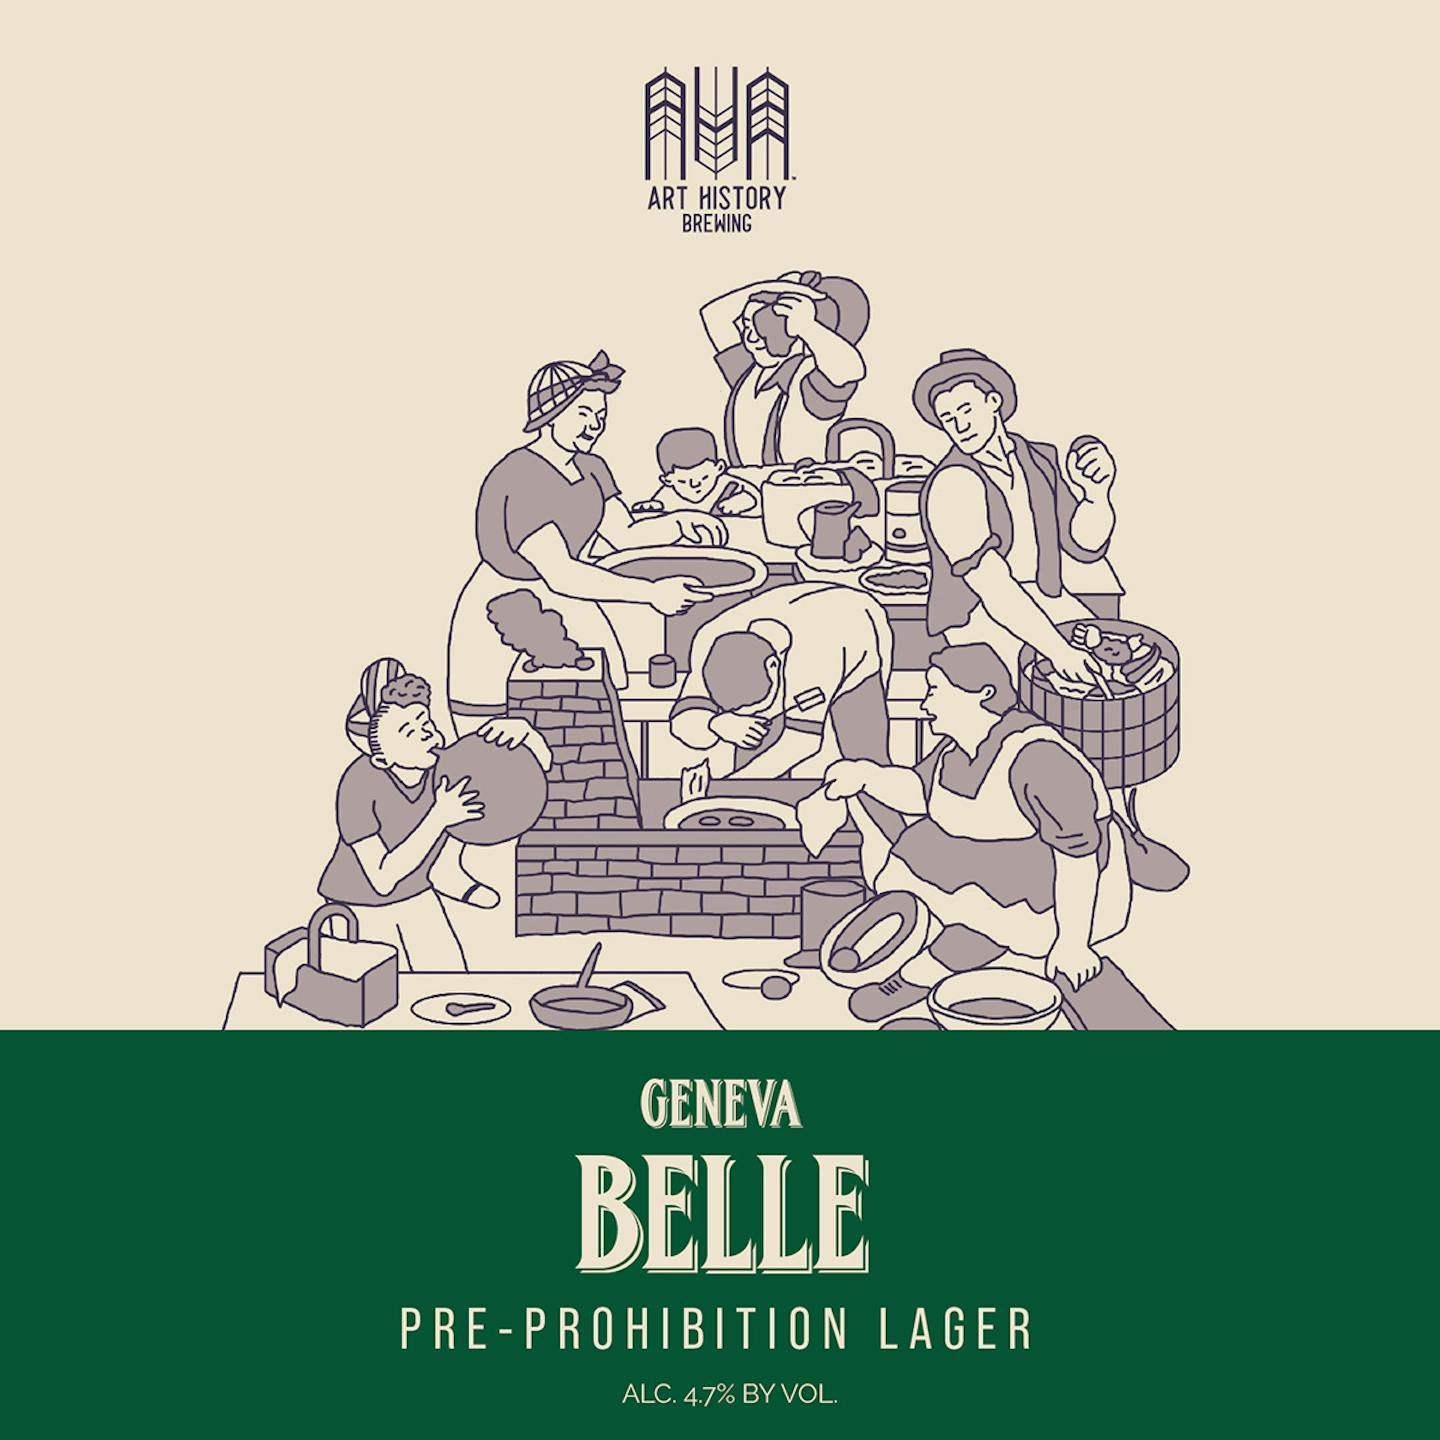 Belle-Beer Label